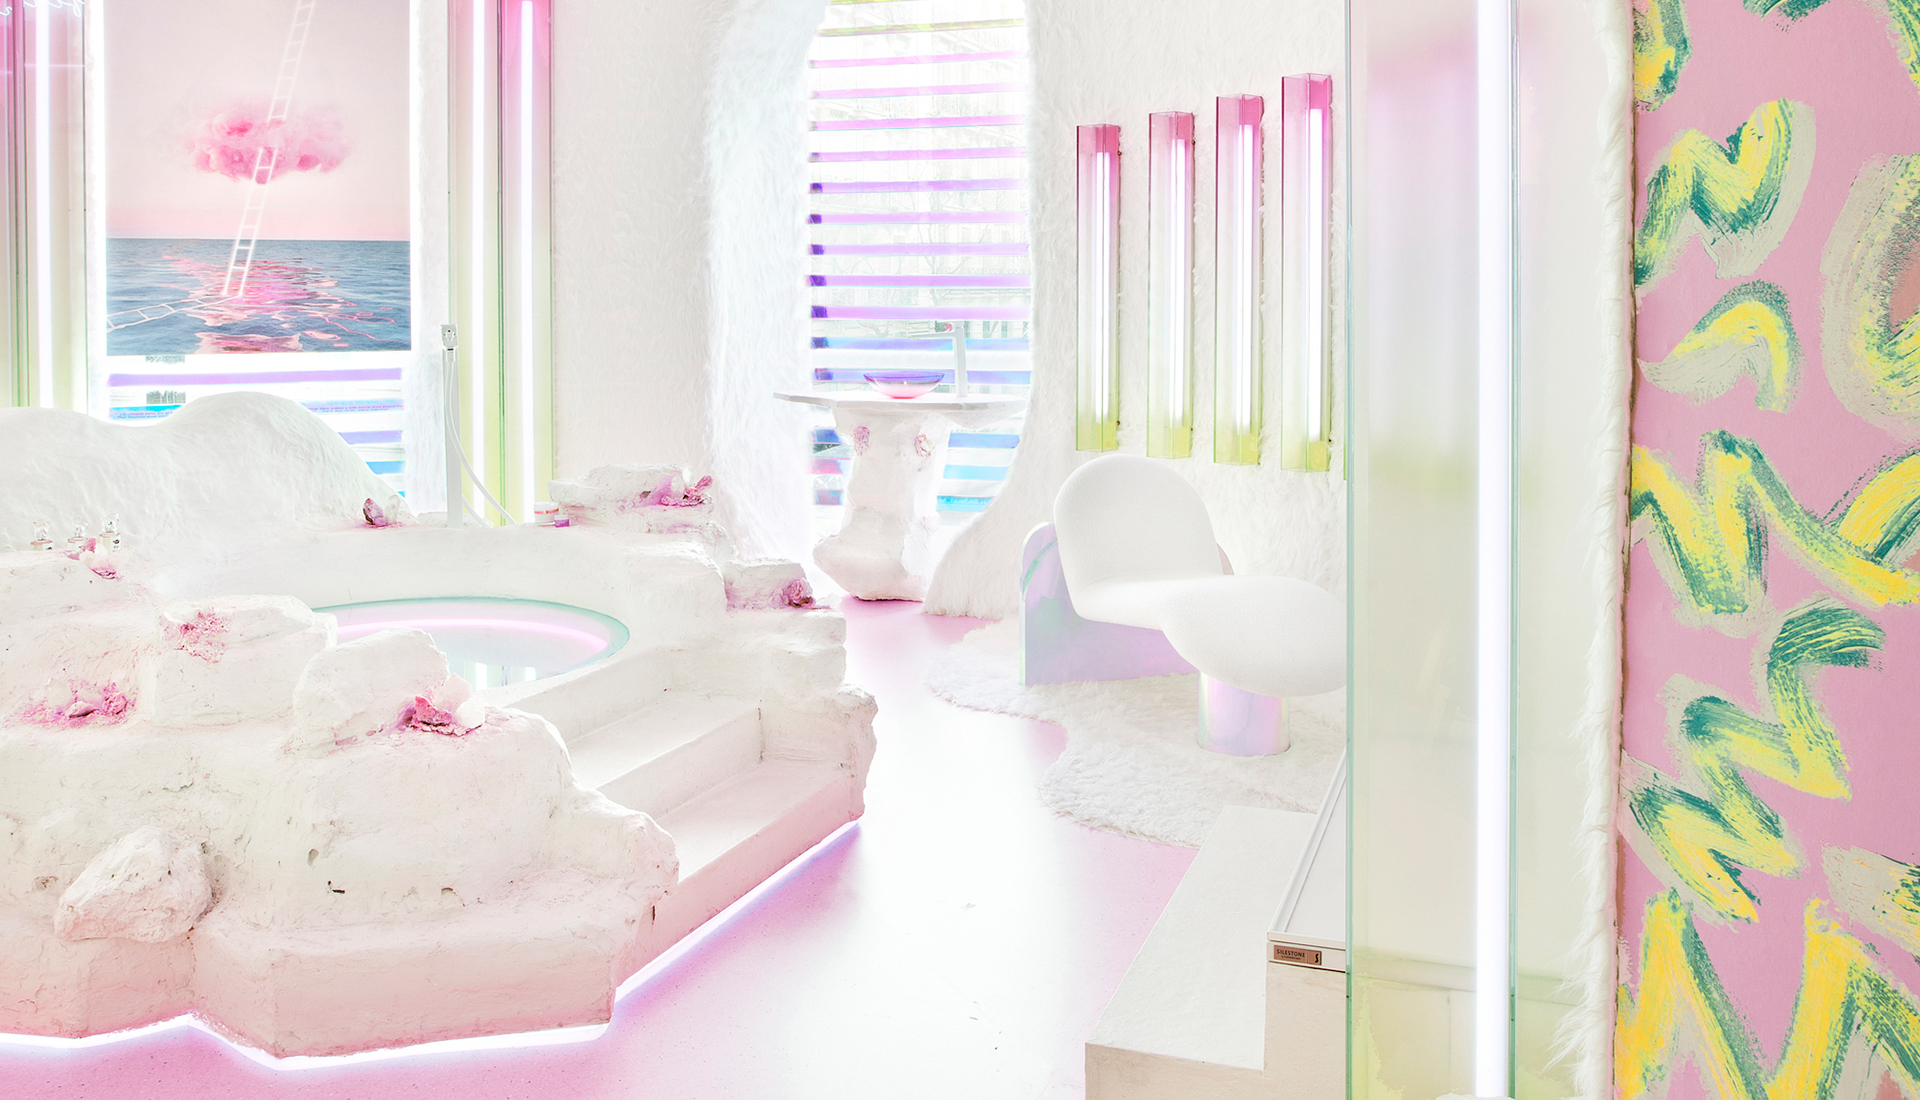 Патрисия Бустос: ванная комната как пример эмоционального дизайна